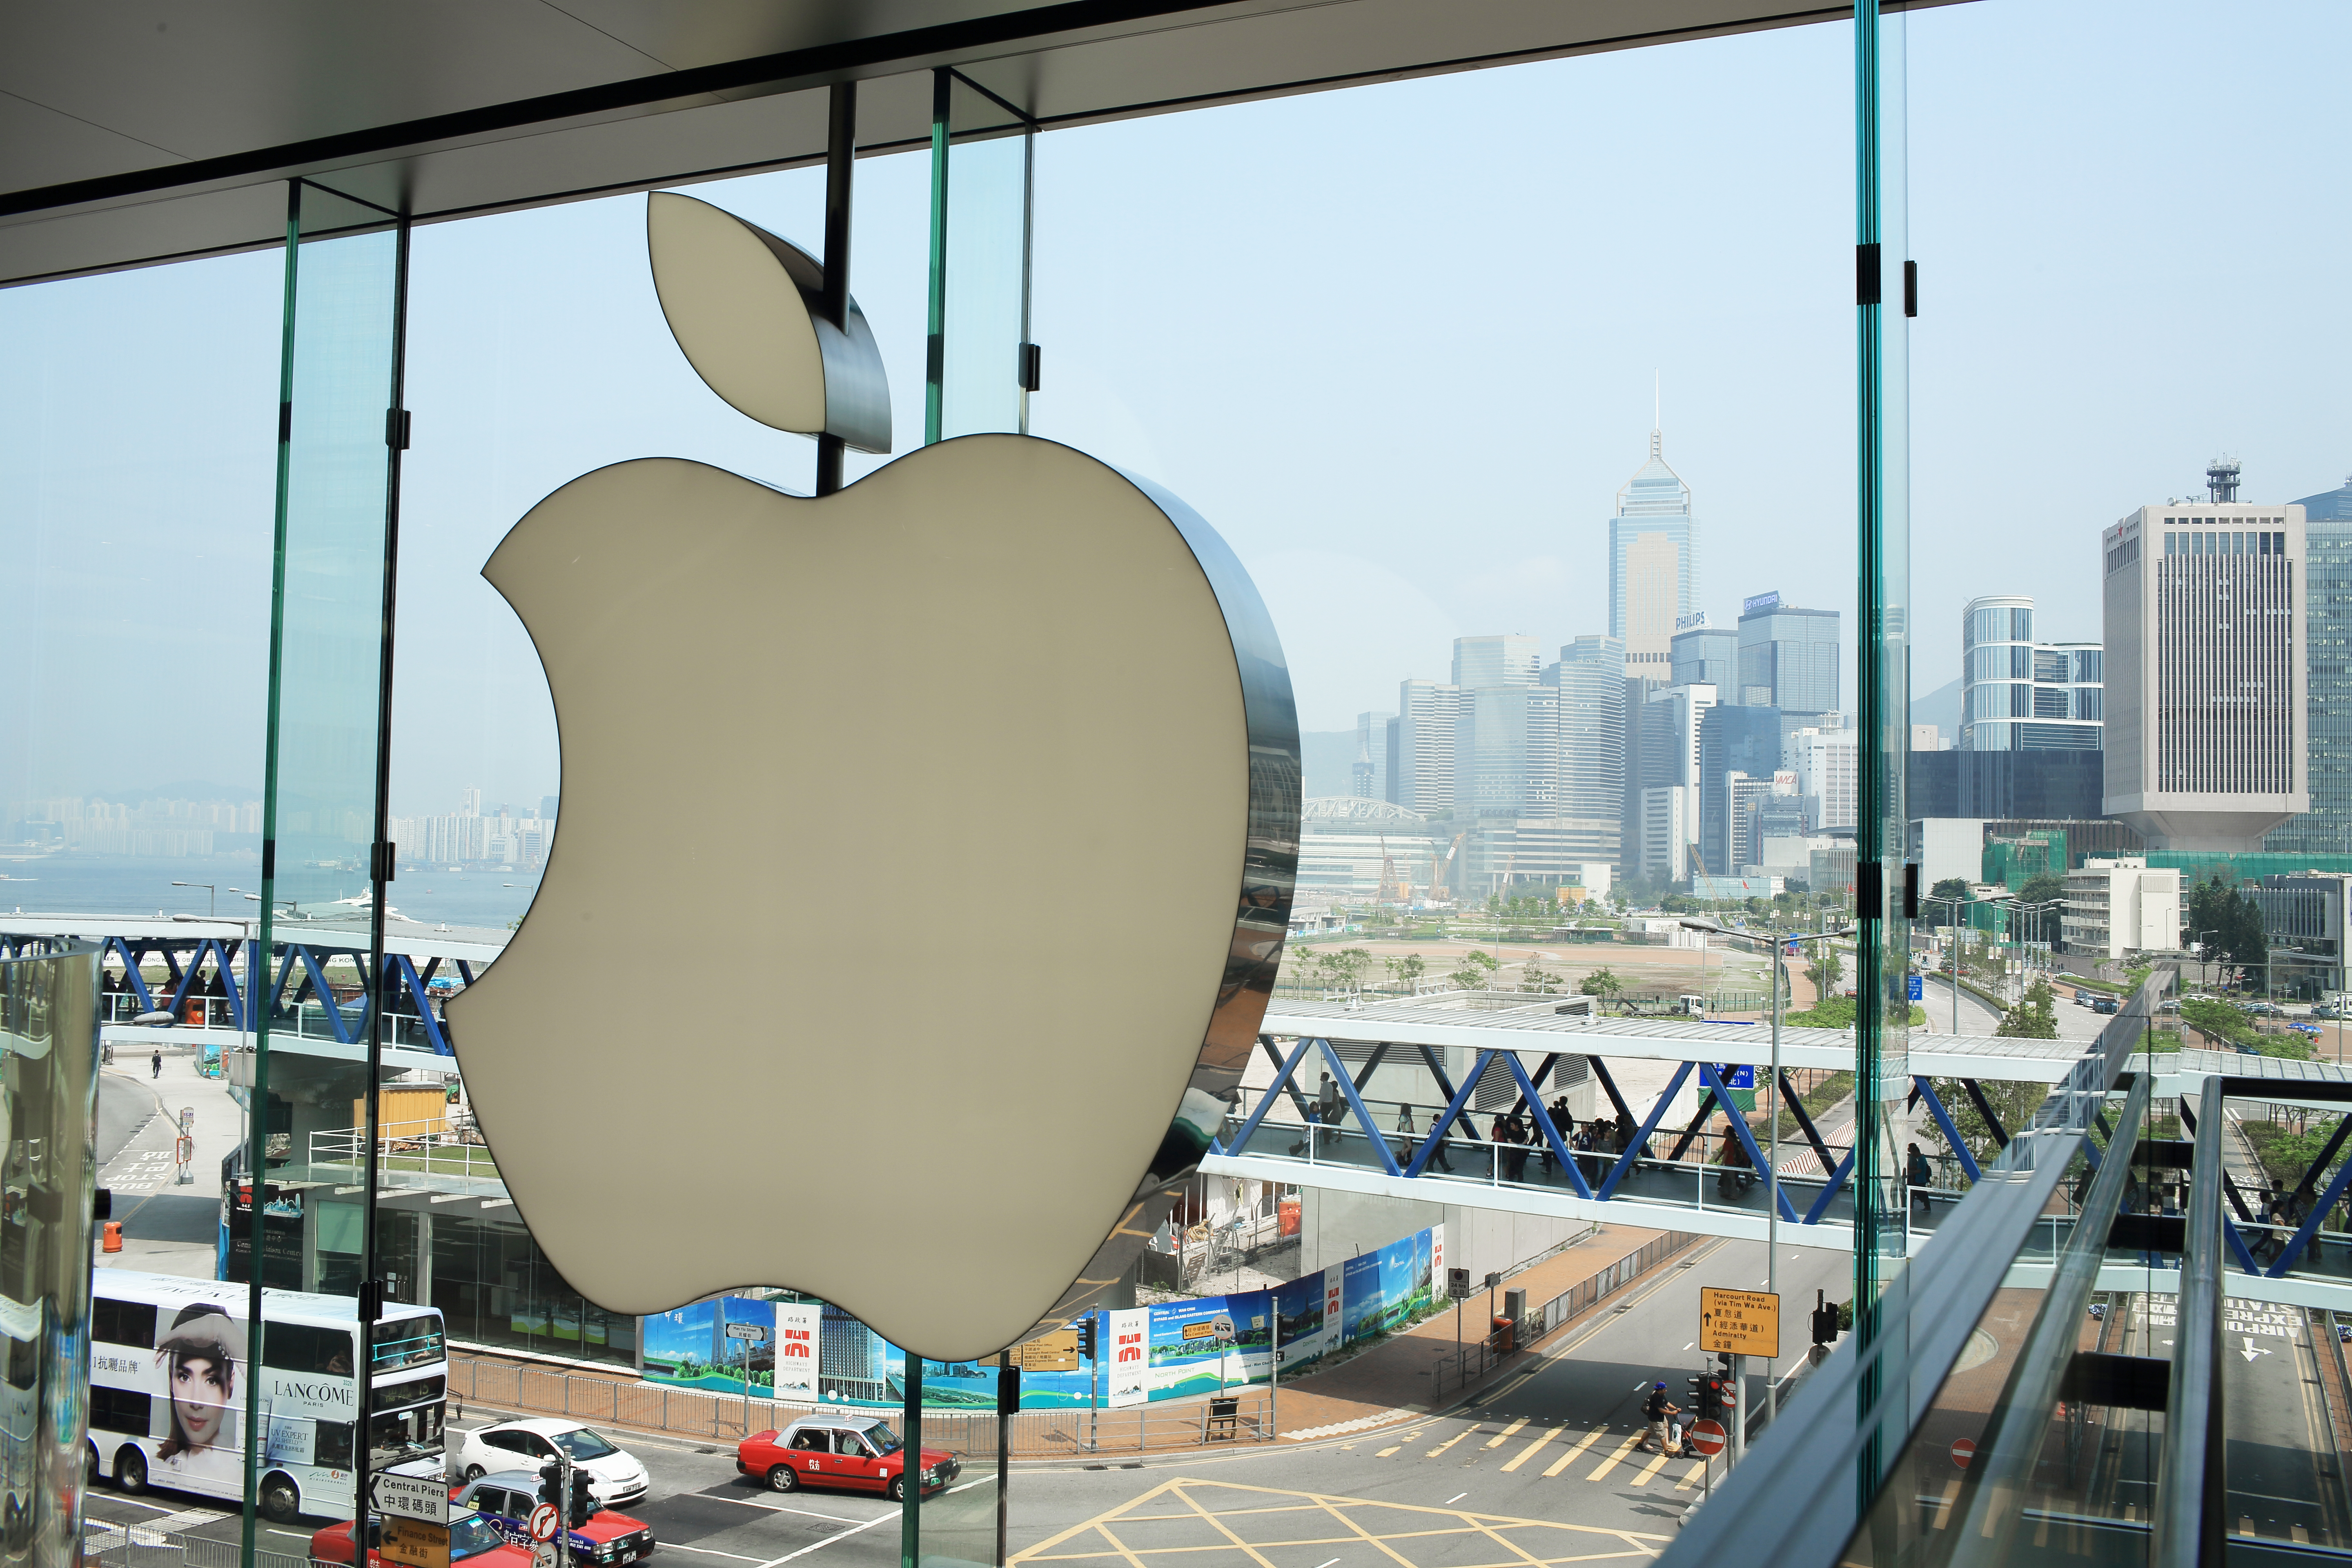  Apple Retreats from China 